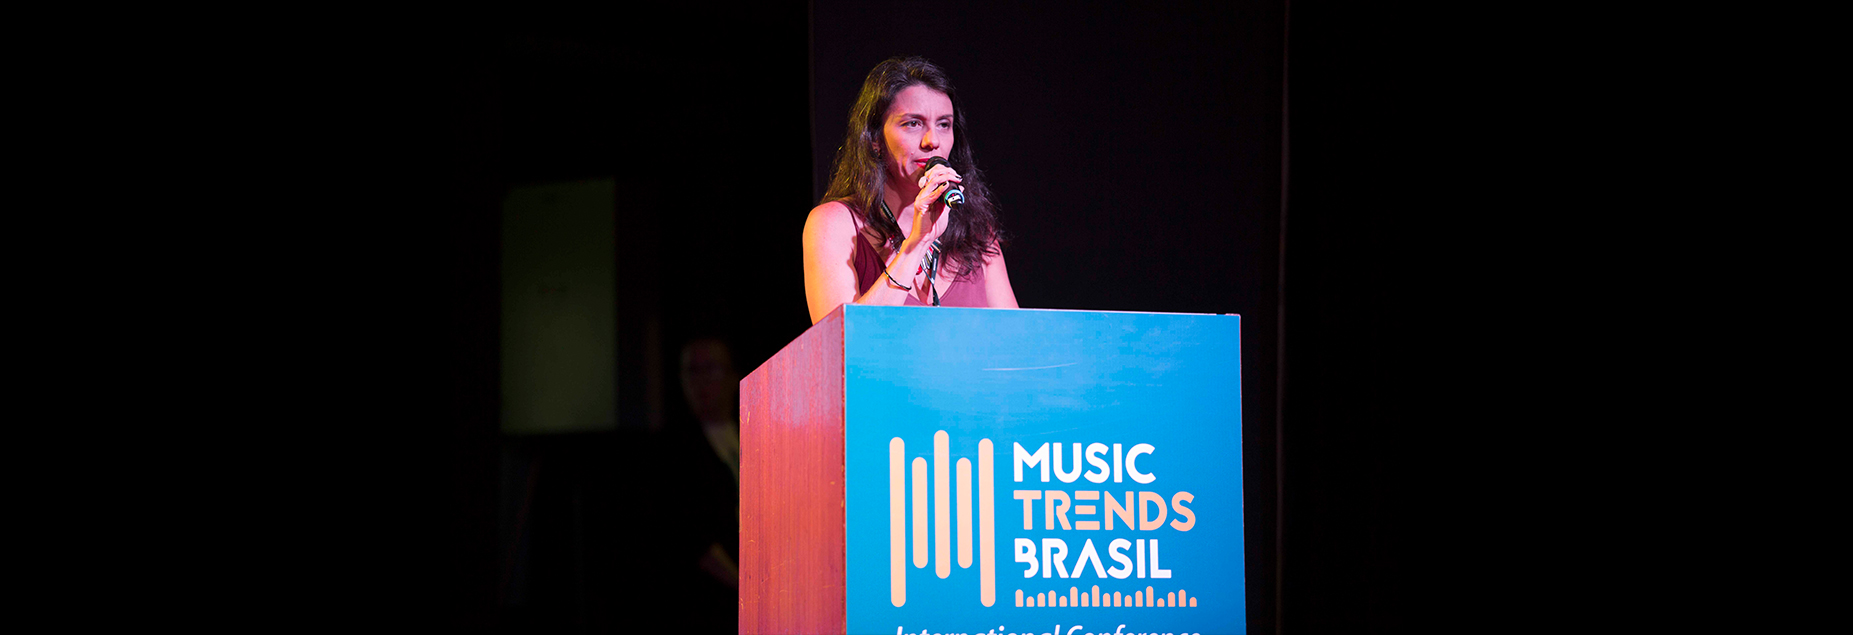 Maior evento da indústria da música no país, Music Trends Brasil, acontece na próxima semana no Rio